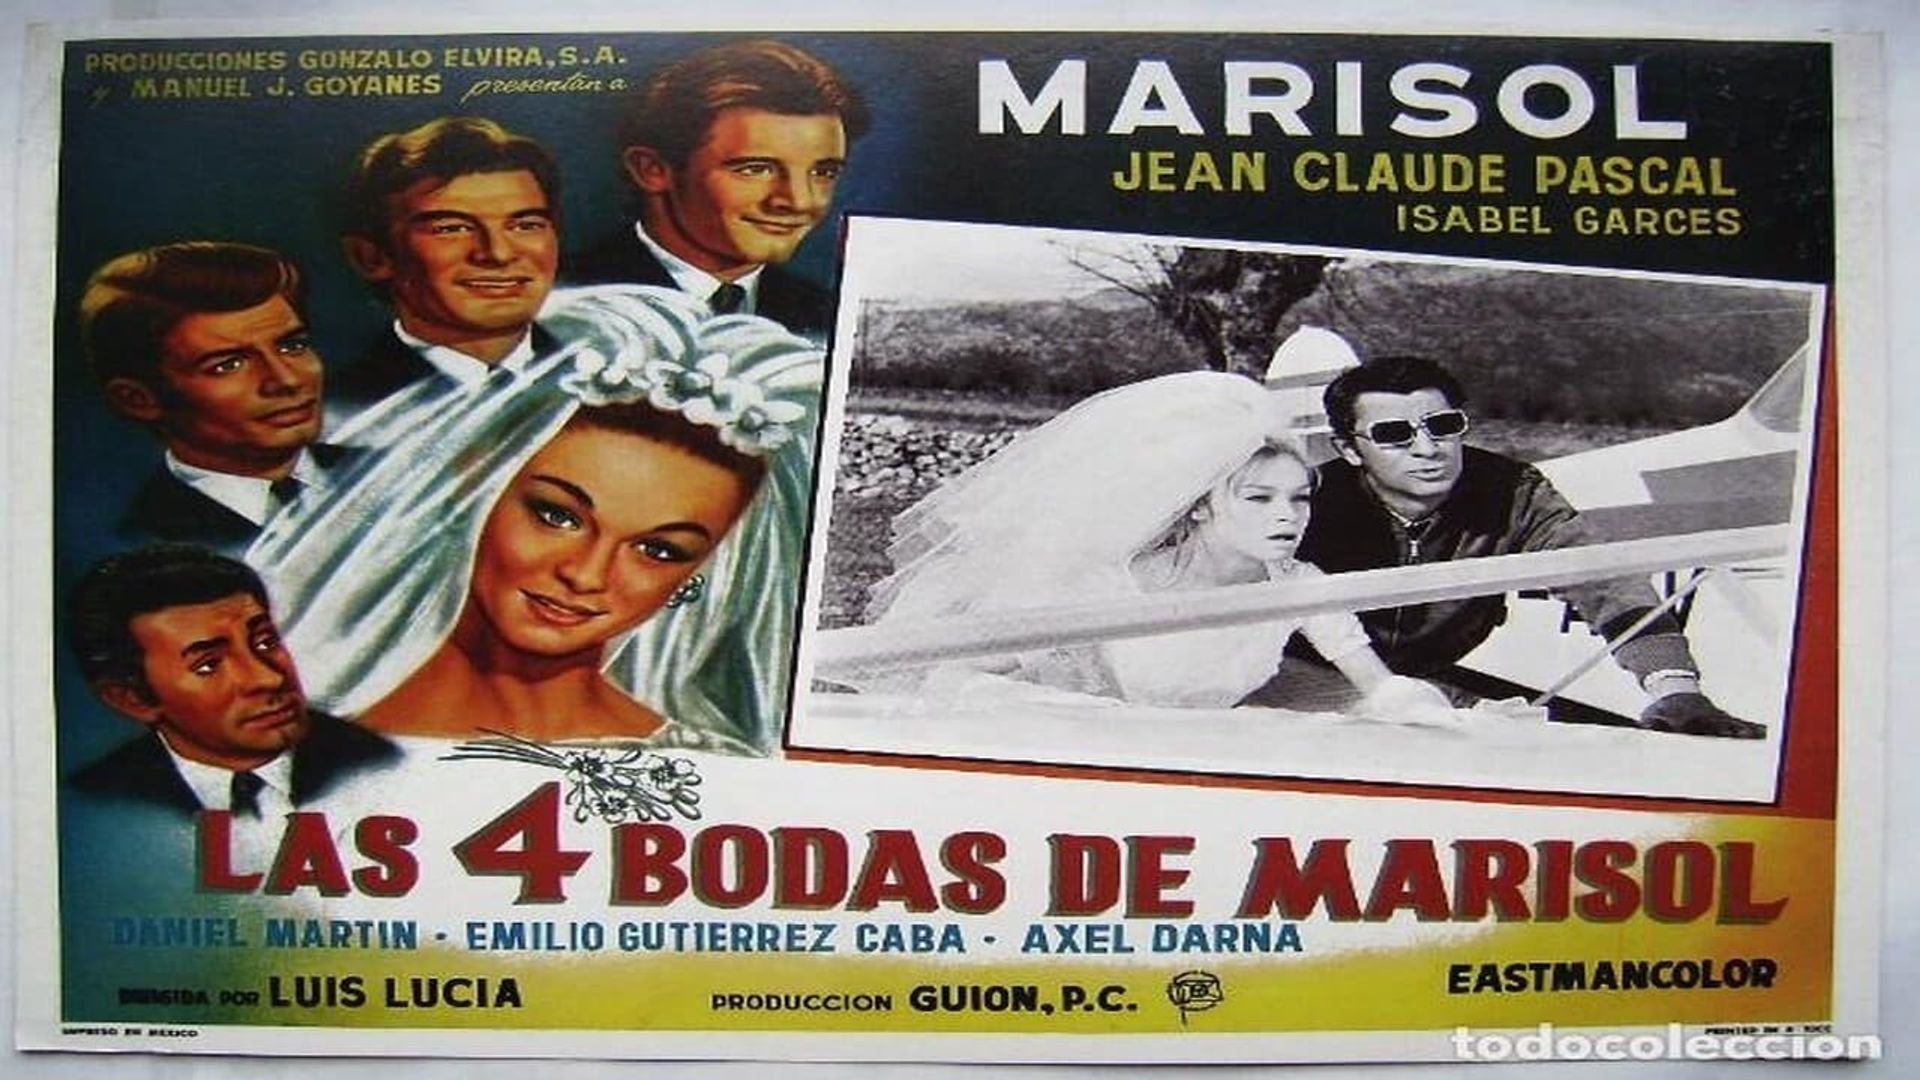 Las 4 bodas de Marisol background